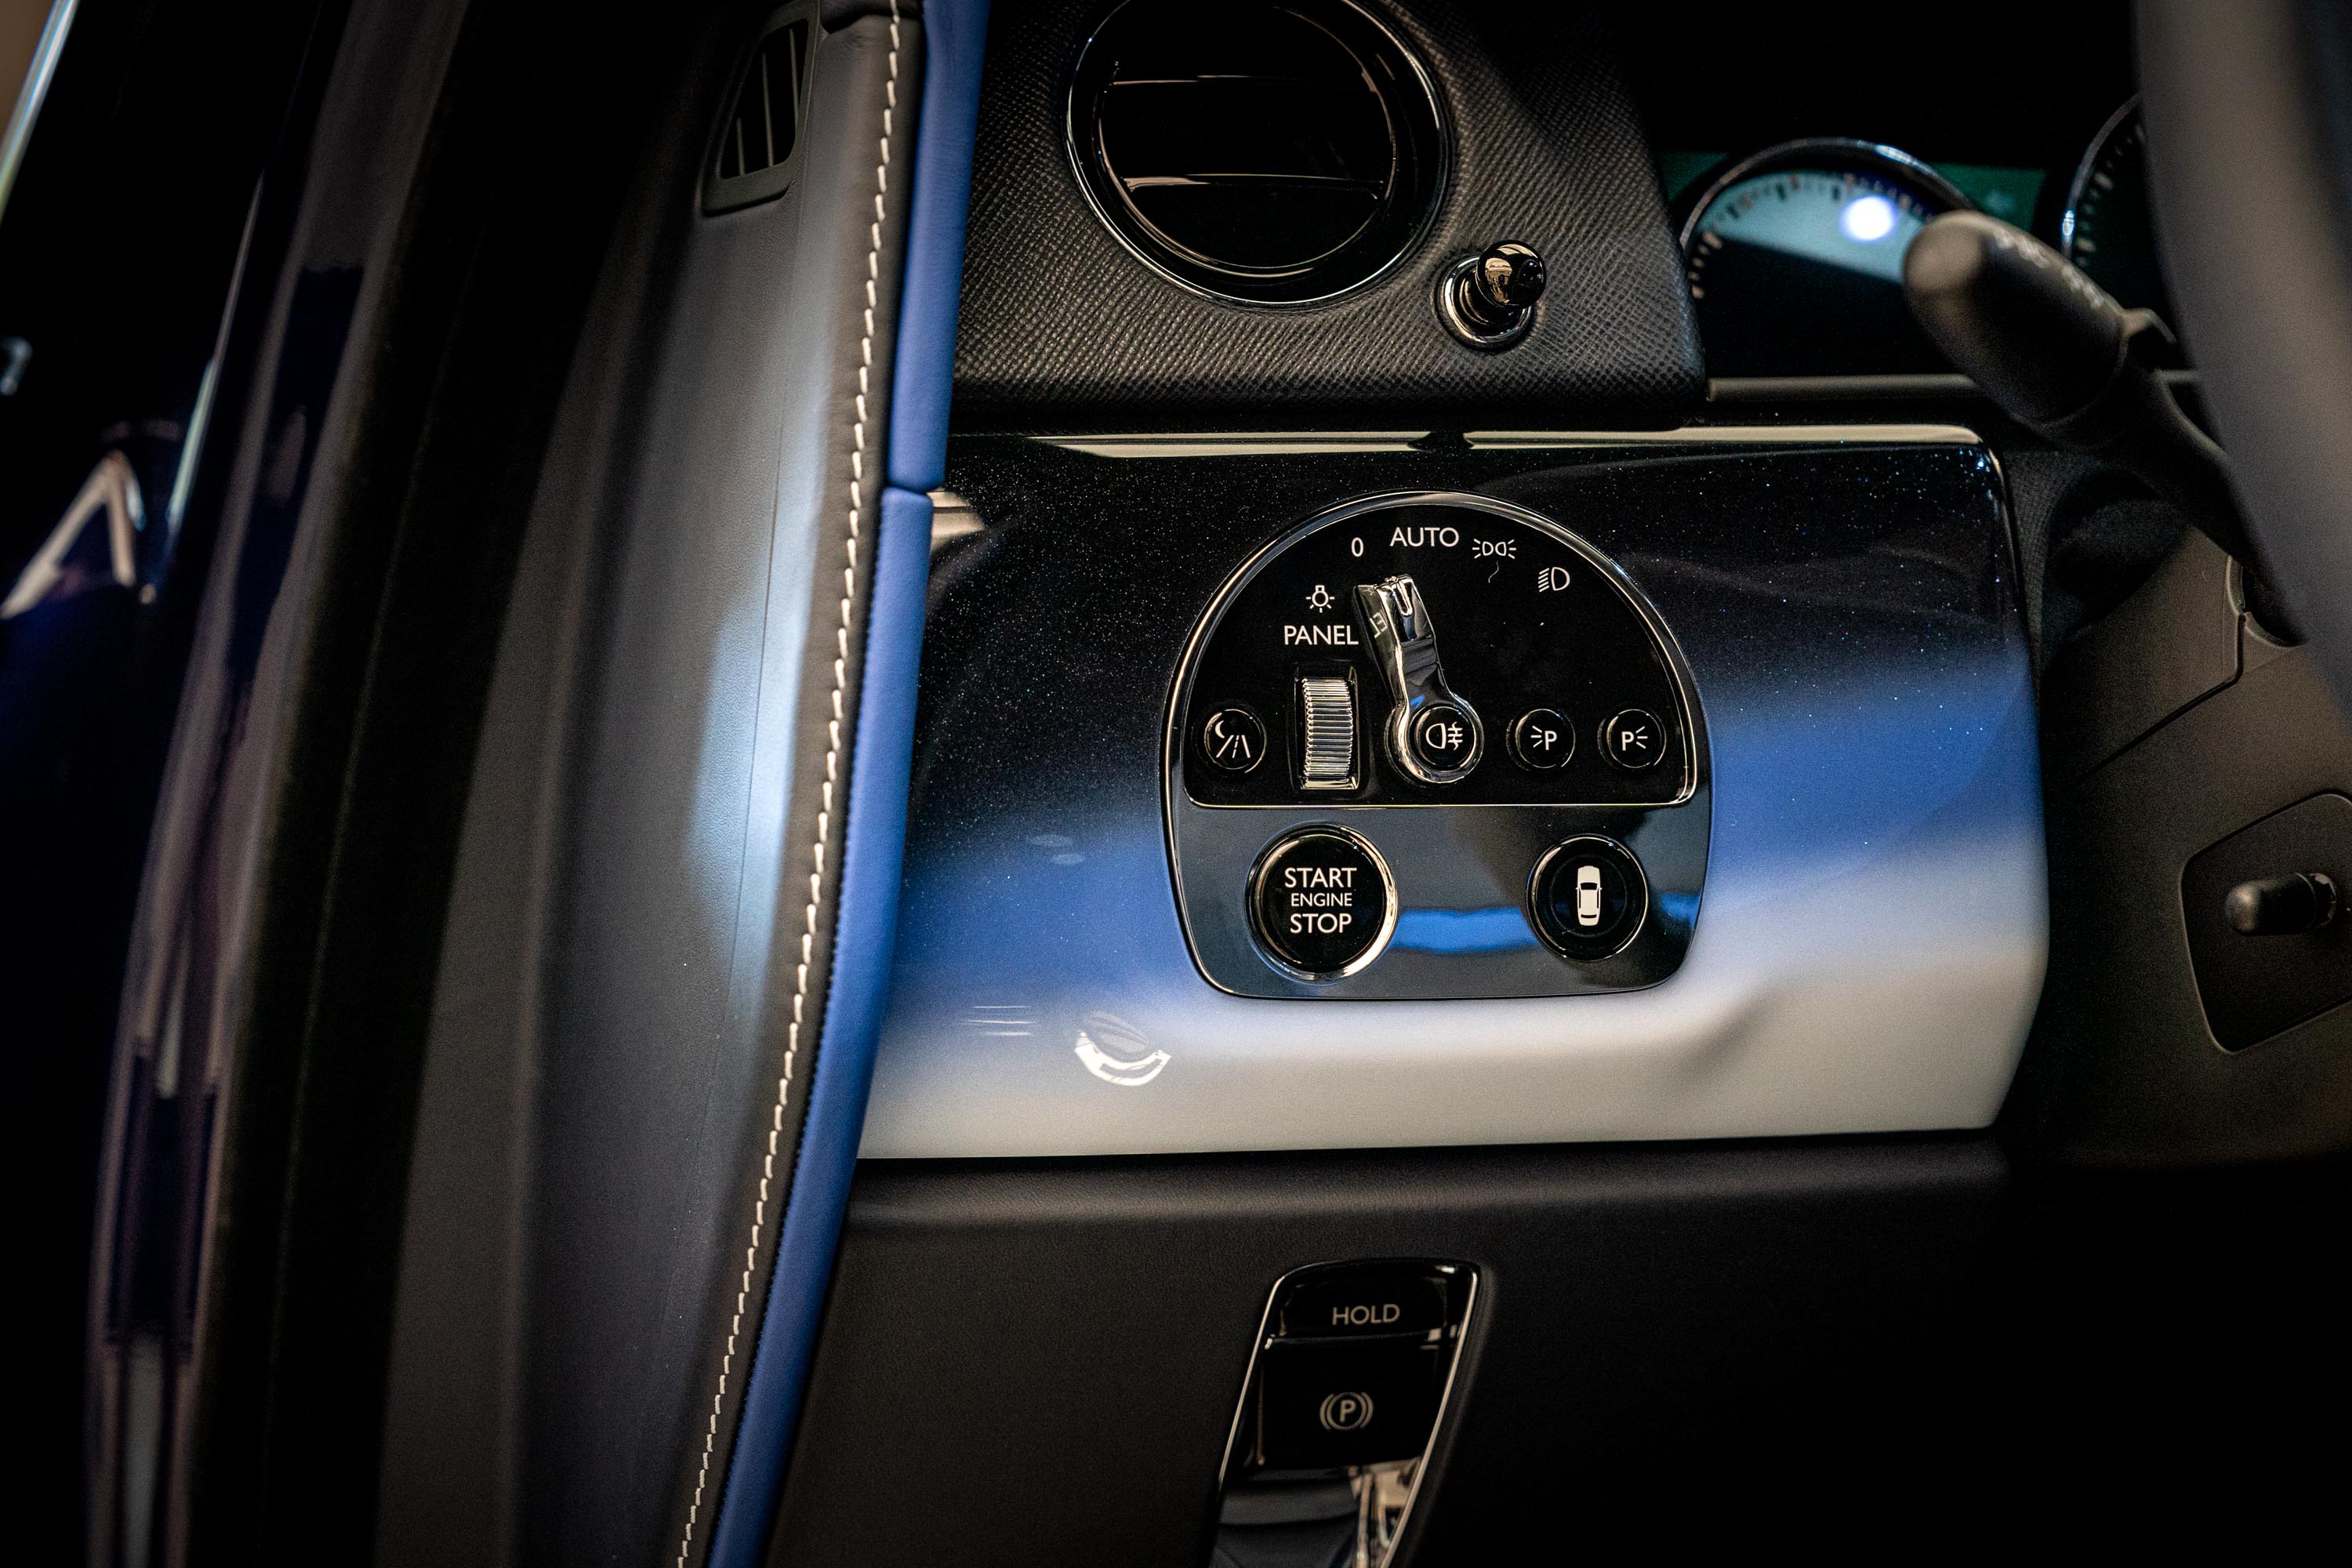 儀錶檯面板和車門飾板均以獨特的噴塗技術呈現蔚藍到墨黑的色彩過渡效果。